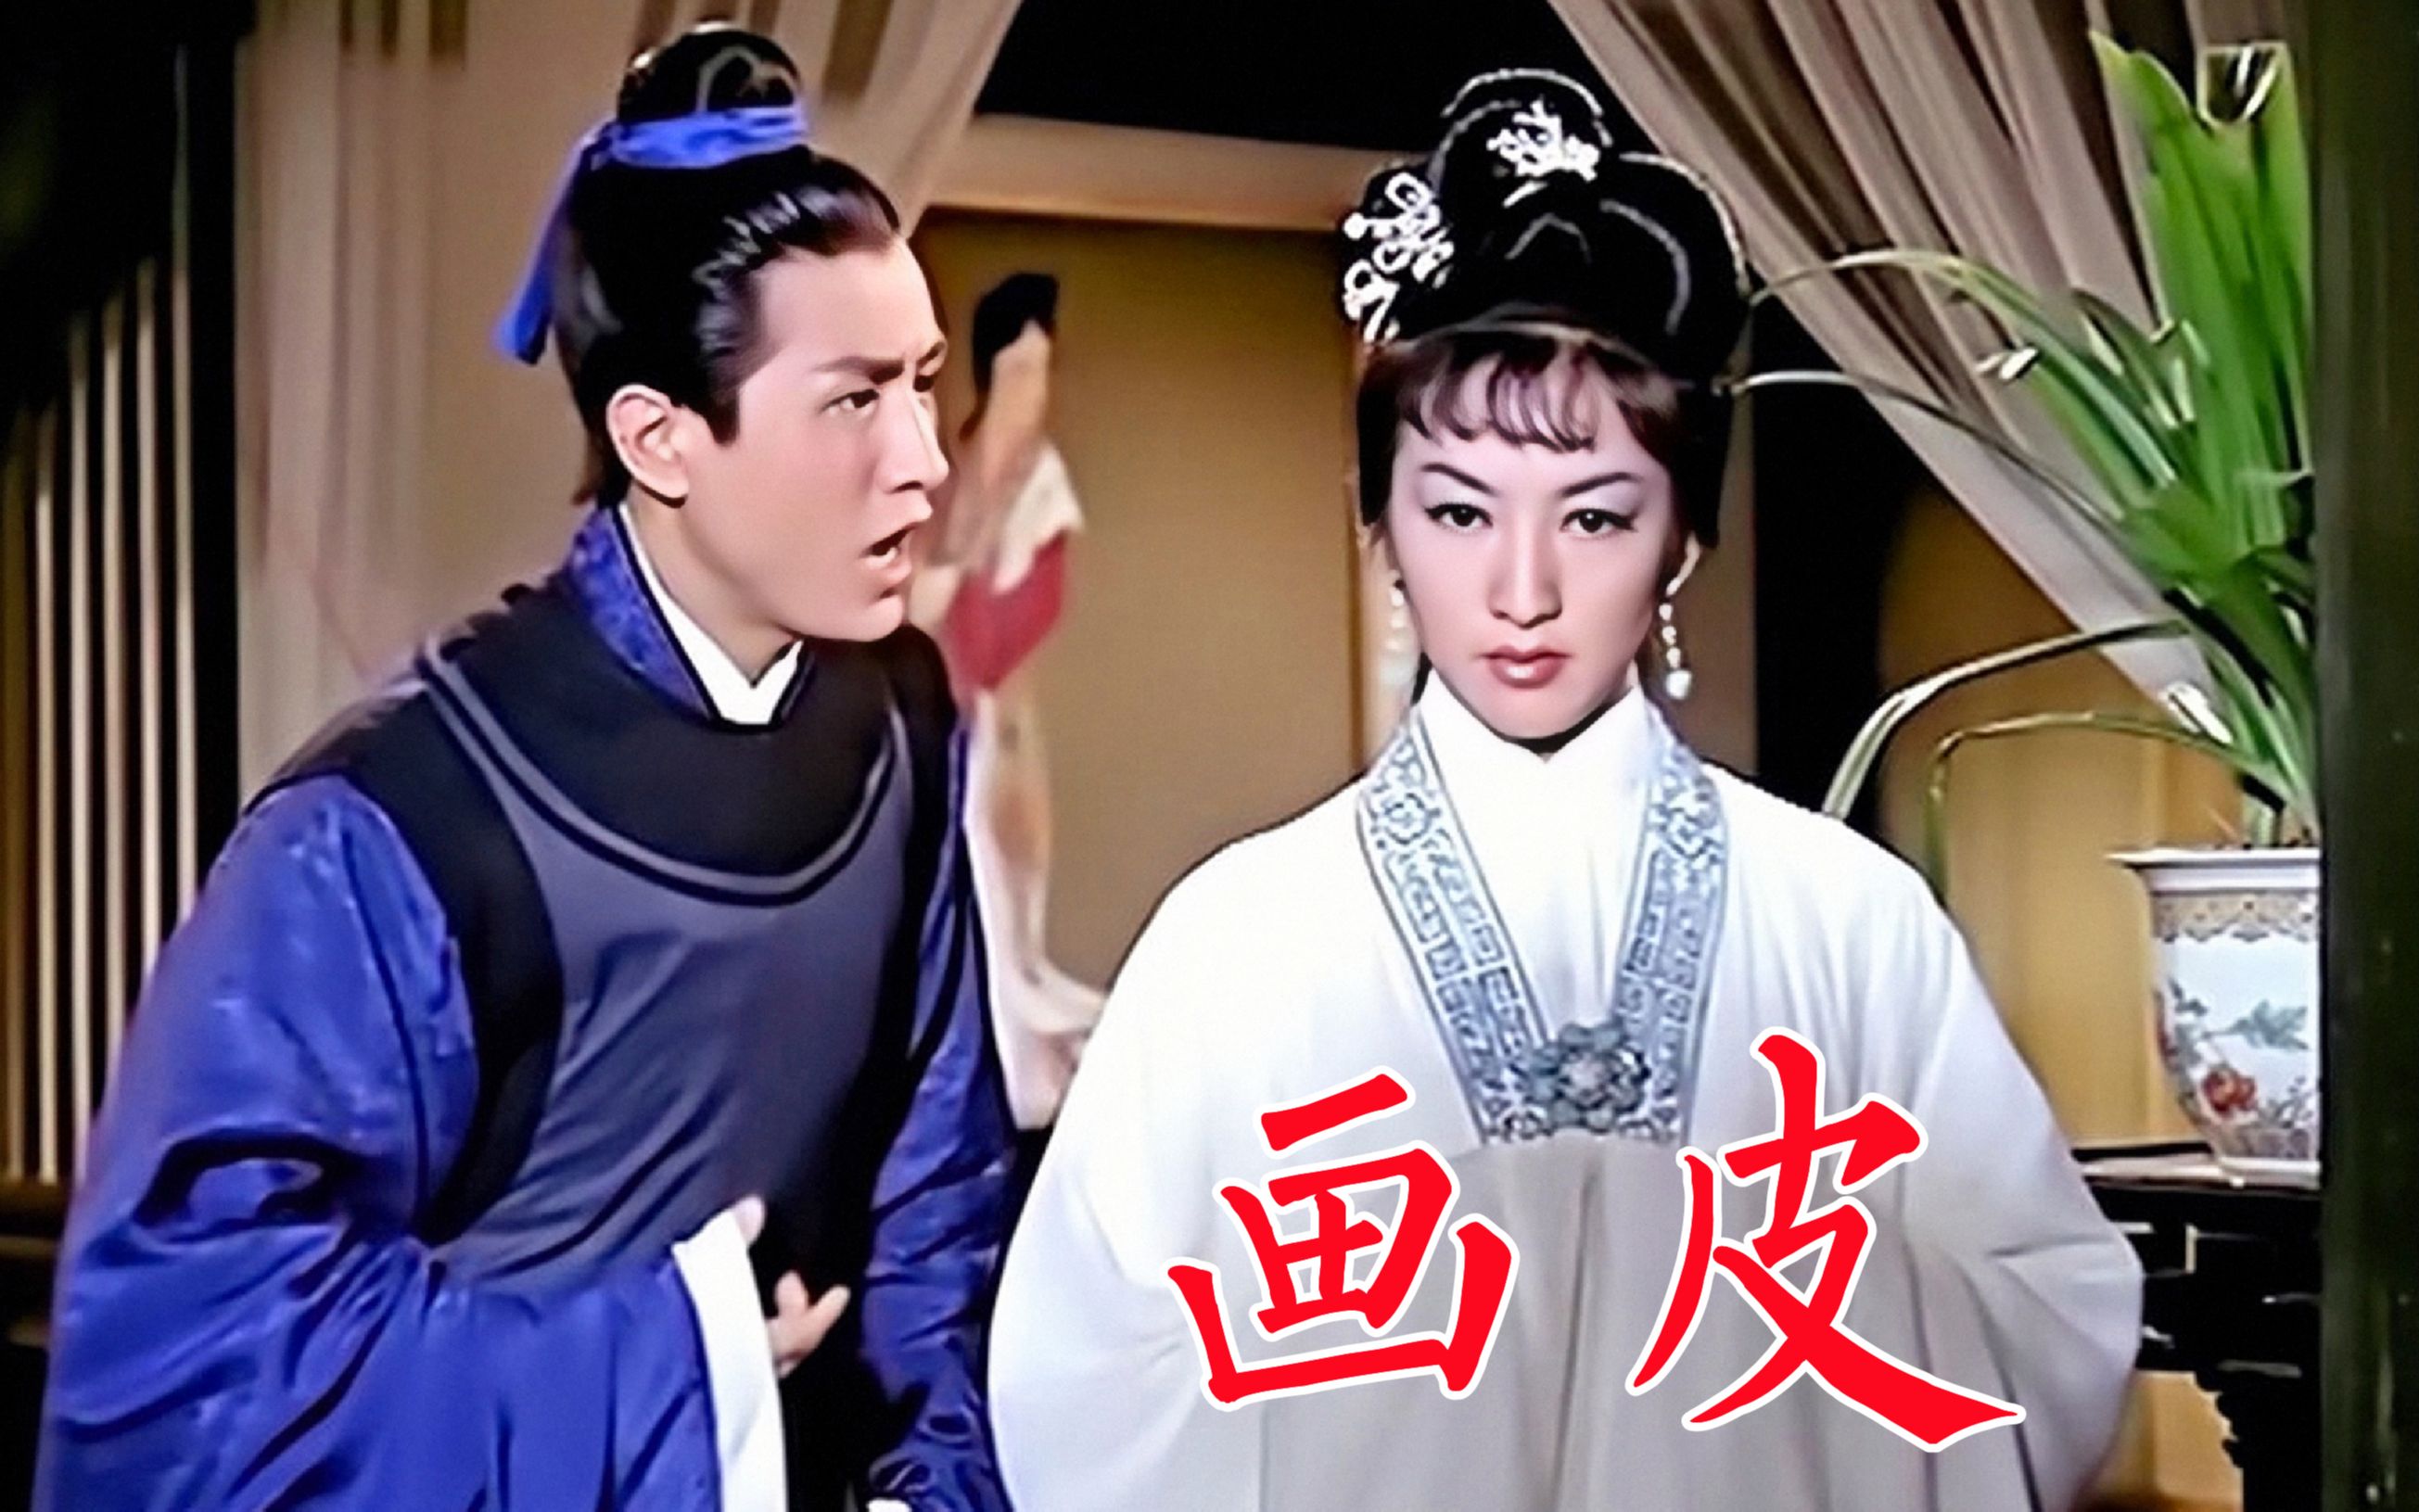 《画皮》1966年香港电影,改编自《聊斋志异》的经典恐怖片